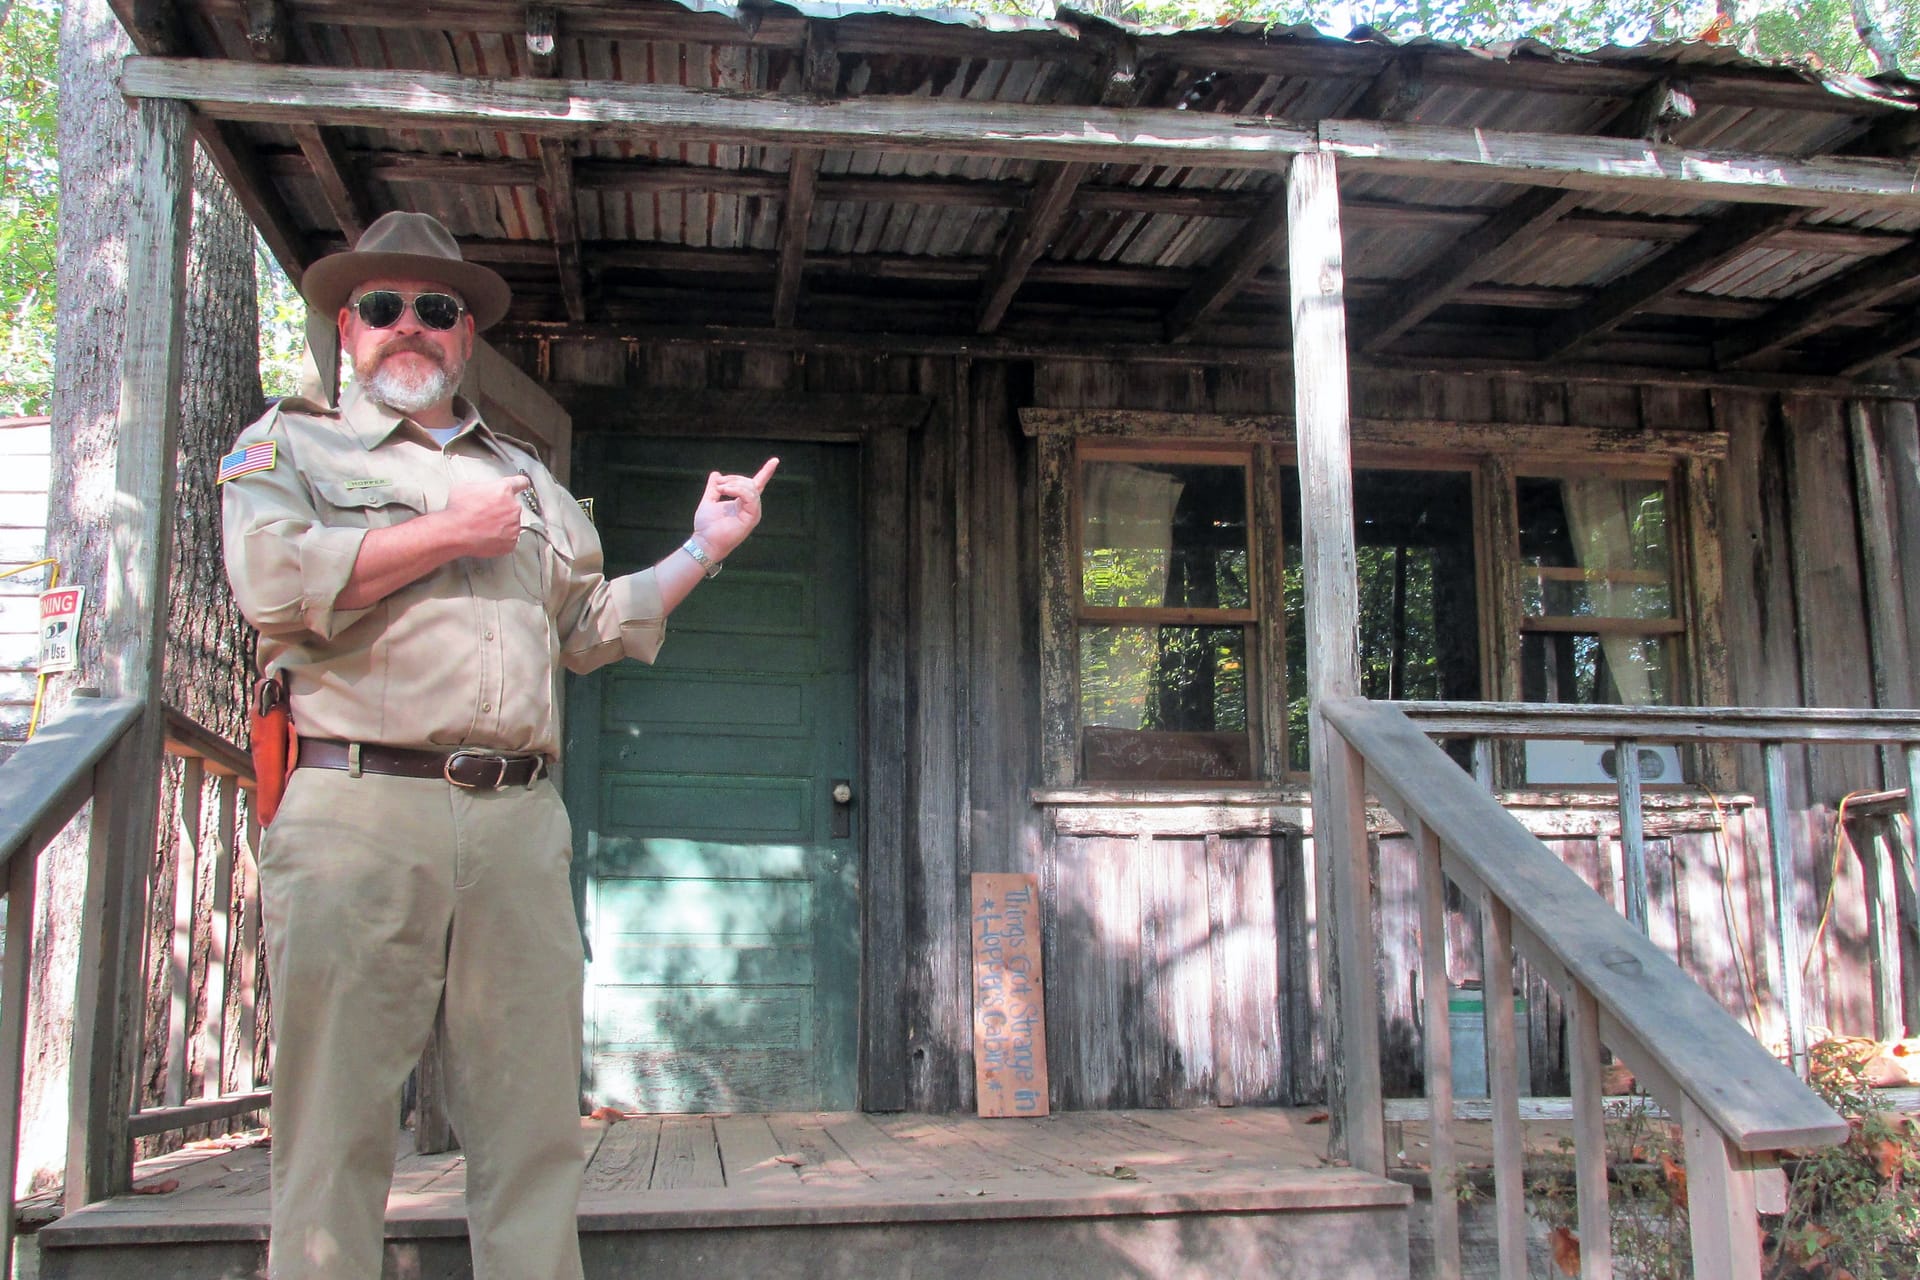 Hopper's Cabin: Die Kulisse ist aus der Kultserie "Stranger Things" bekannt.